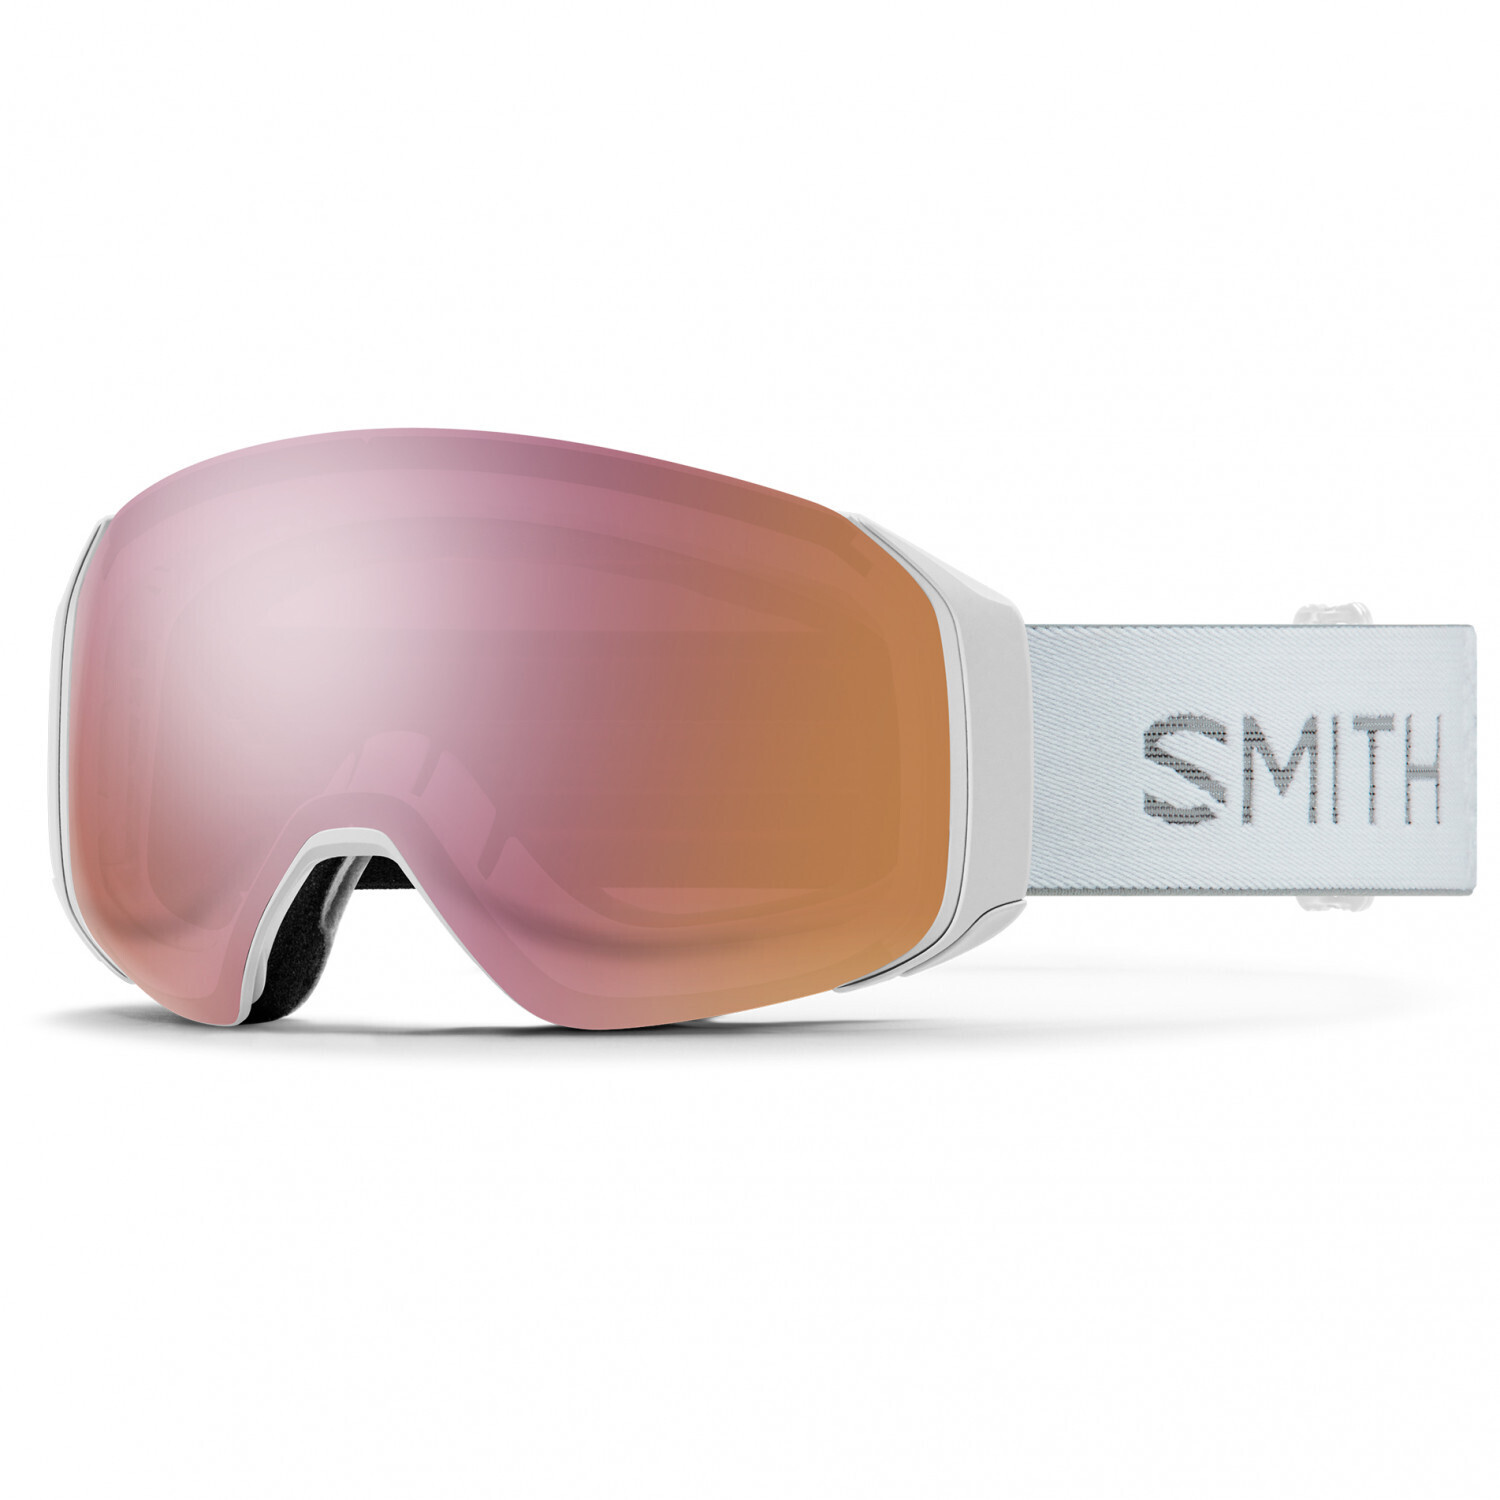 Photos - Ski Goggles Smith Optics Smith 4D MAG S white chunky knit/ChromaPop everyday rose gold 